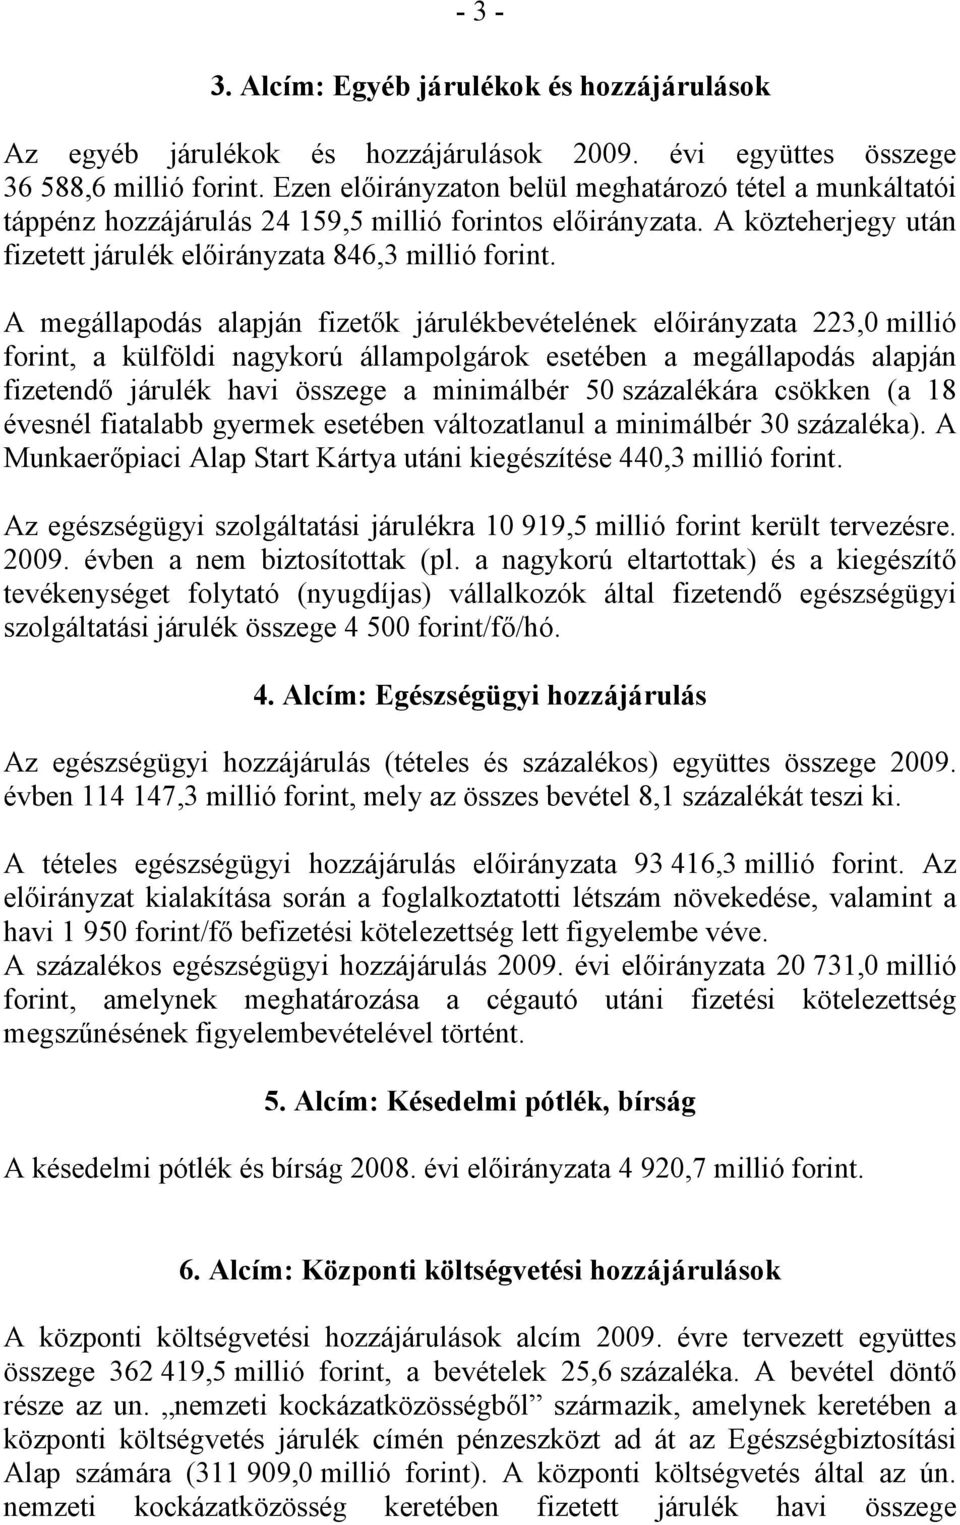 A megállapodás alapján fizetők járulékbevételének előirányzata 223,0 millió forint, a külföldi nagykorú állampolgárok esetében a megállapodás alapján fizetendő járulék havi összege a minimálbér 50